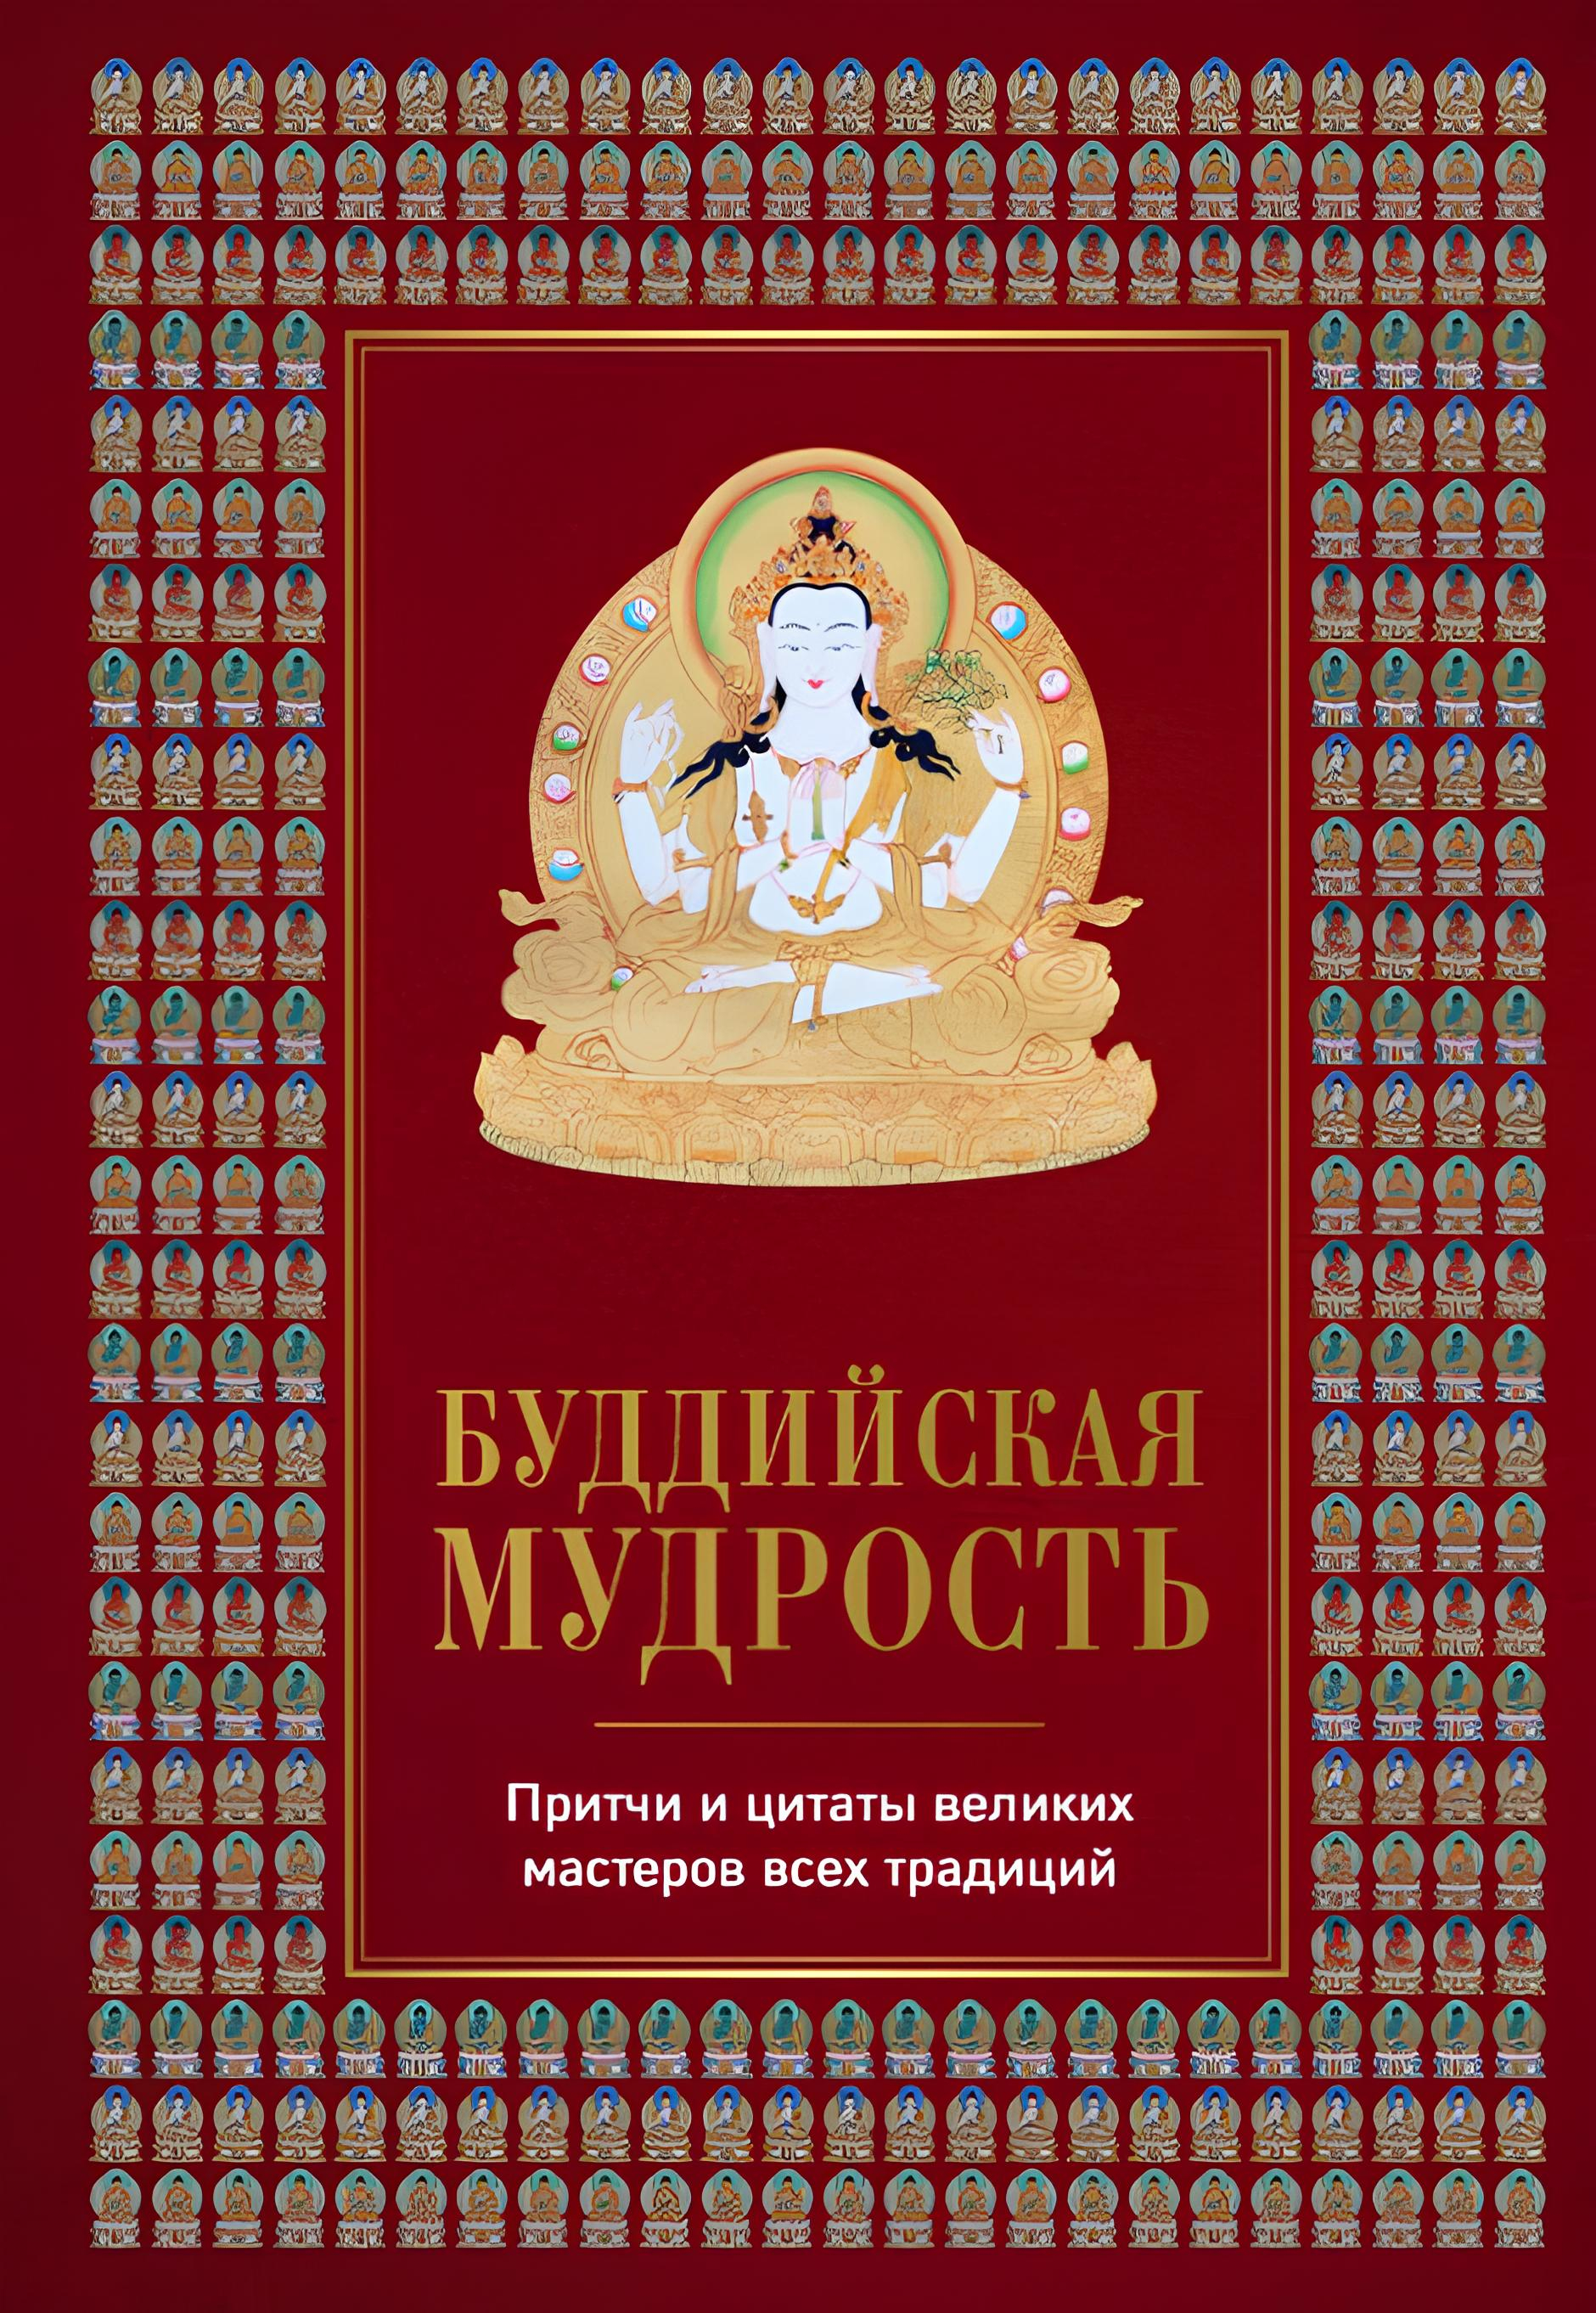 "Буддийская мудрость. Притчи и цитаты великих мастеров всех традиций" 